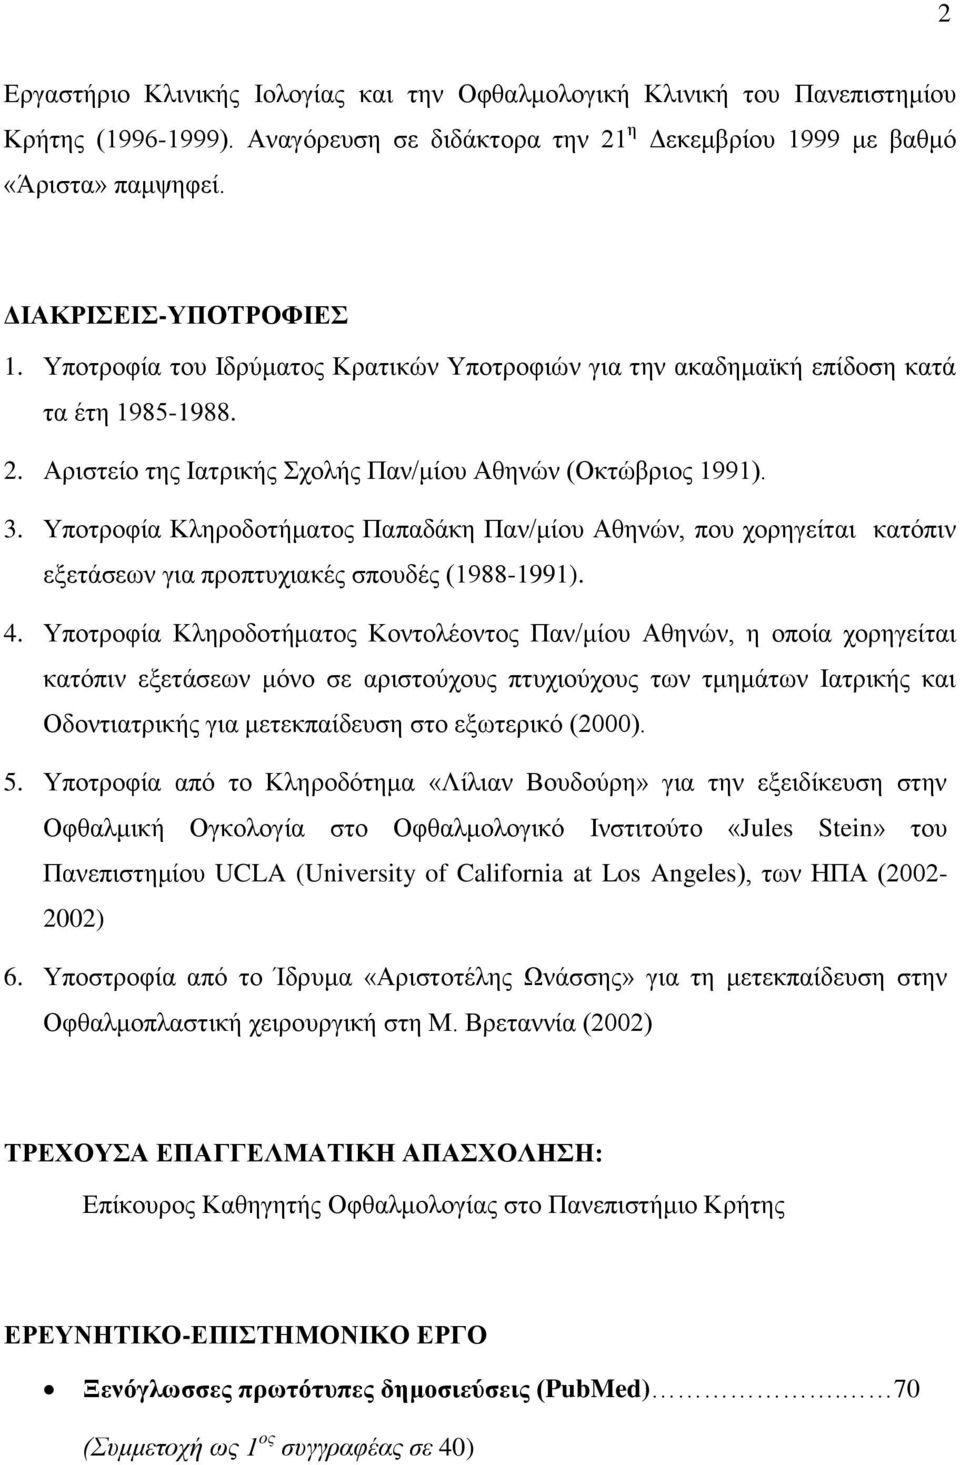 Υποτροφία Κληροδοτήματος Παπαδάκη Παν/μίου Αθηνών, που χορηγείται κατόπιν εξετάσεων για προπτυχιακές σπουδές (1988-1991). 4.